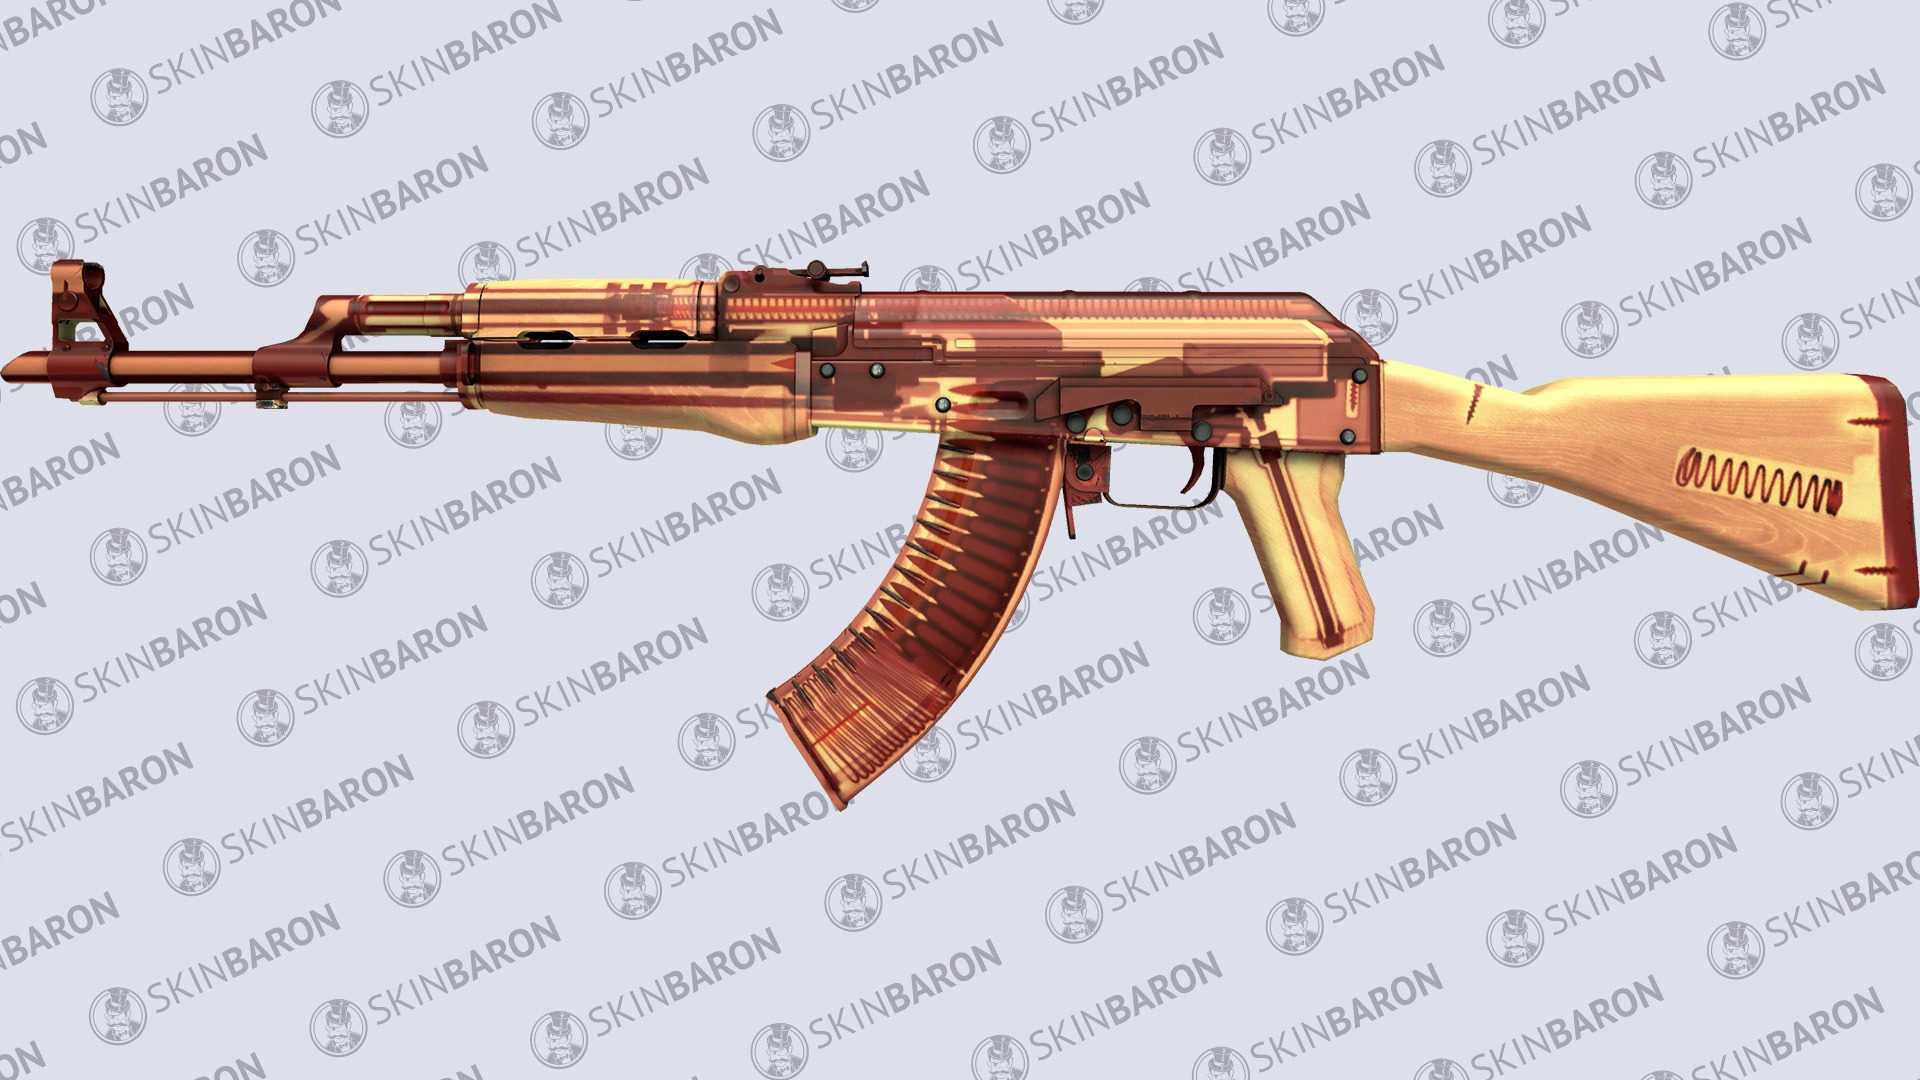 AK-47 X-Ray - Most Expensive AK-47 skins